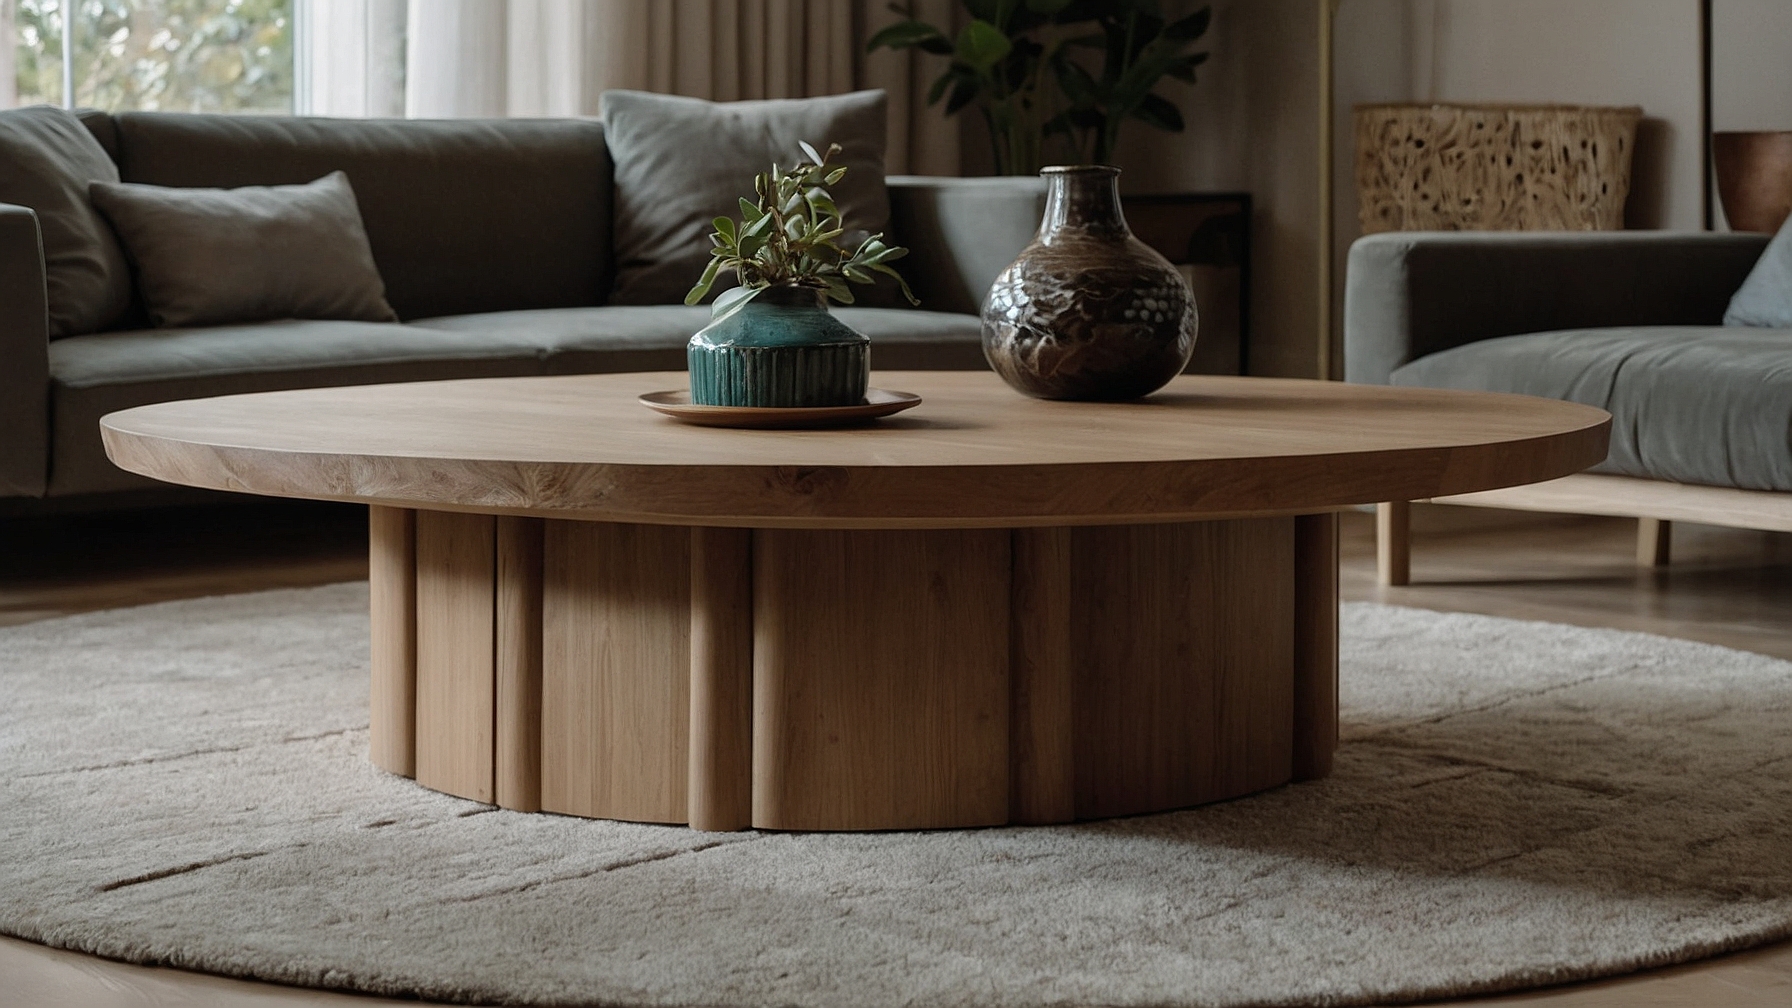 Default Minimalist house Wood Coffee Table Modern Style Timel 2 1